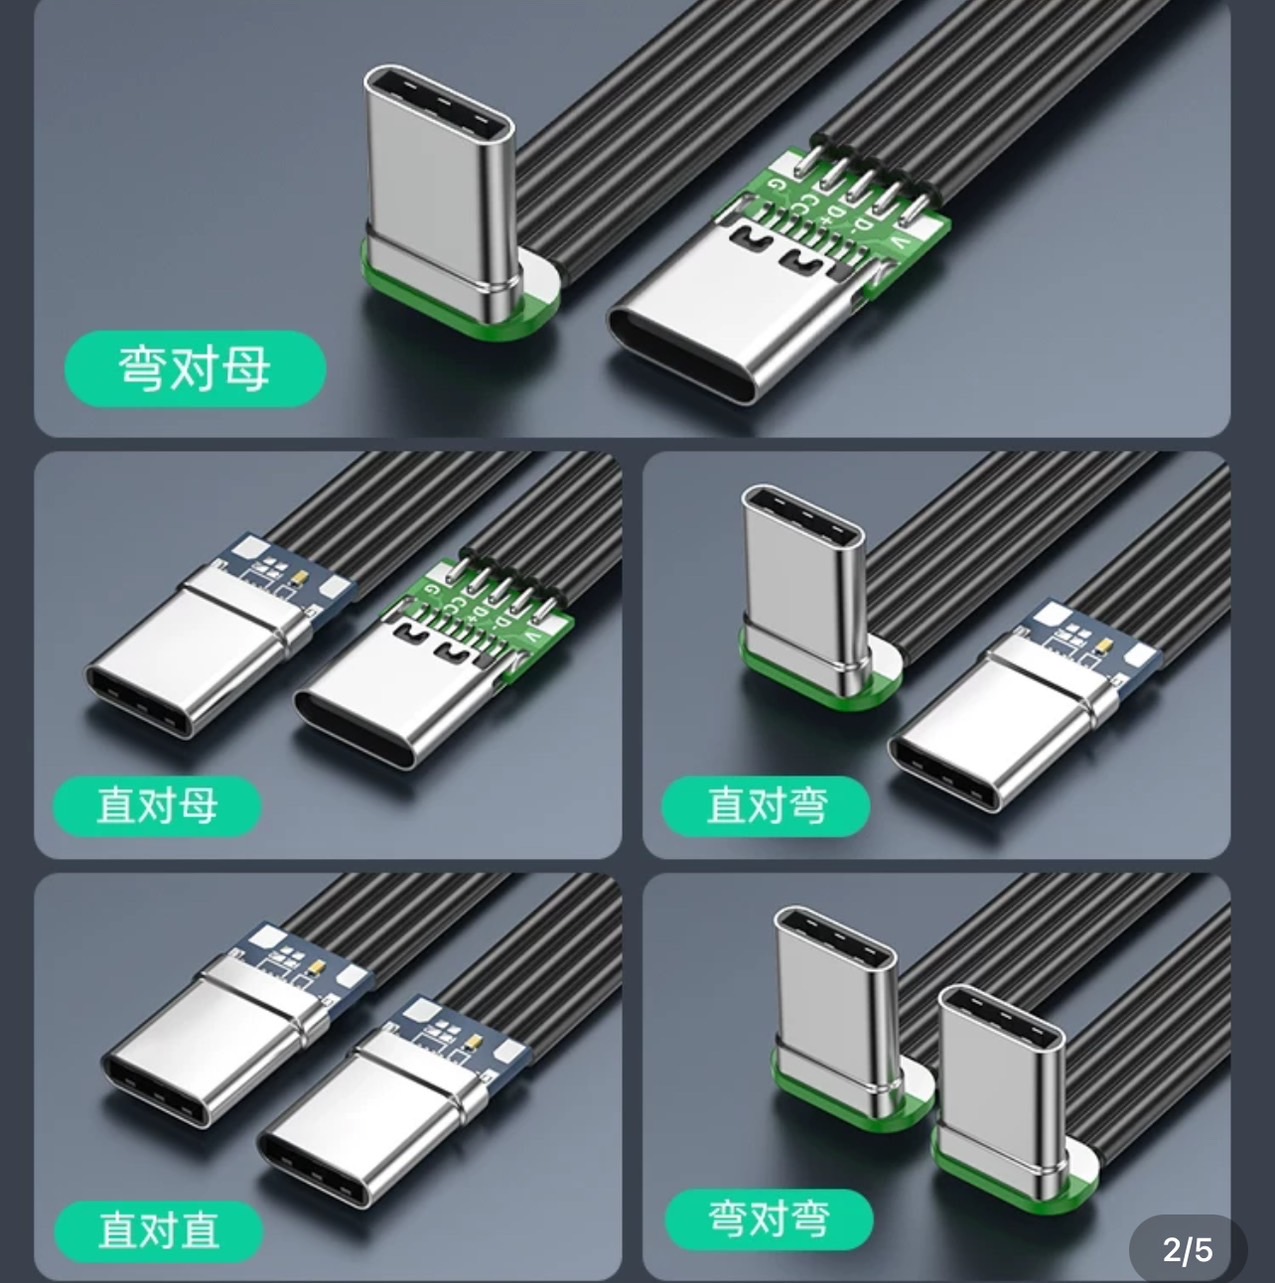 USB 3.0 有五种不同的弯头设计，包括左弯、右弯、上弯、下弯和直头，USB 3.0 以满足各种走线需求。